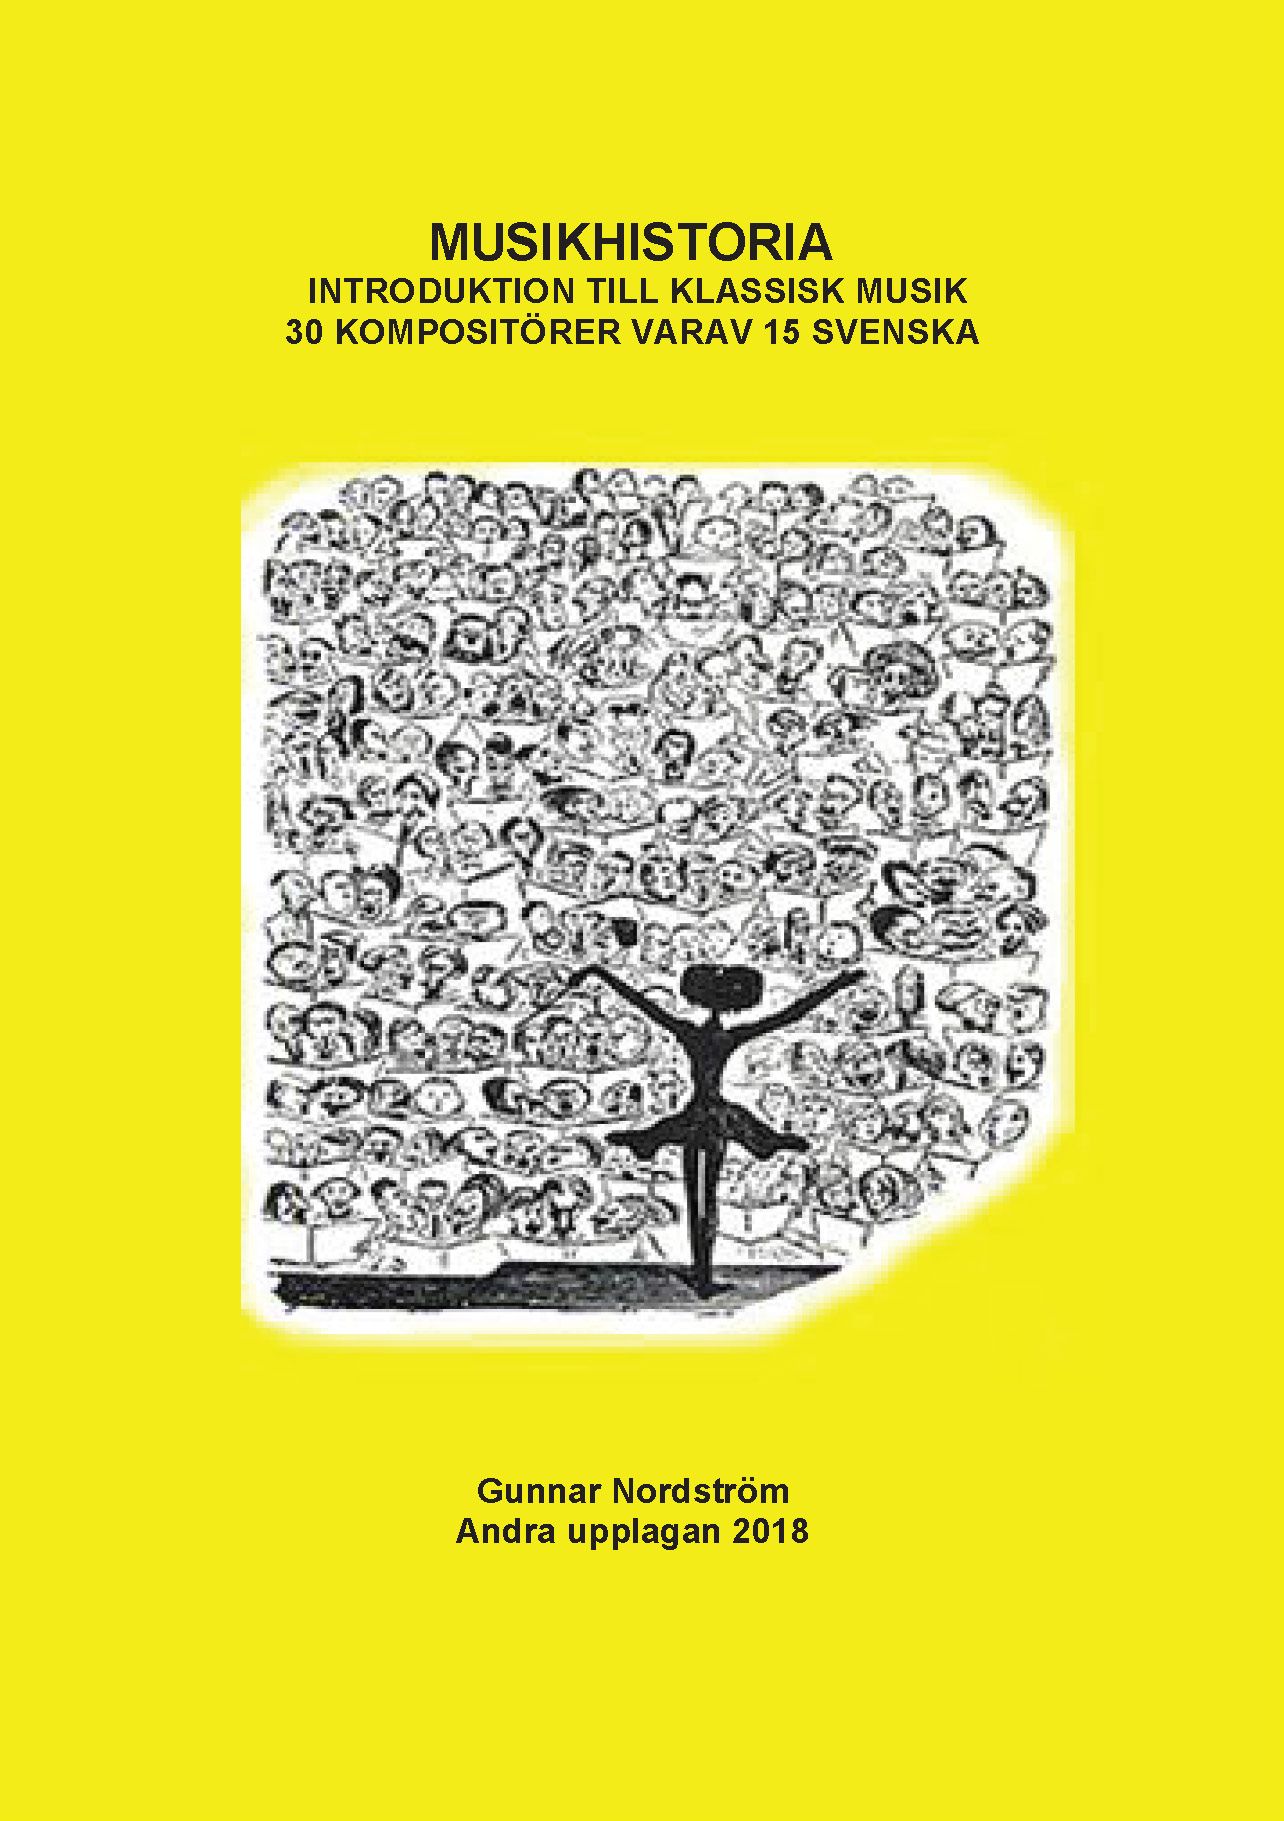 Musikhistoria - Introduktion till klassisk musik, e-bok av Gunnar Nordström